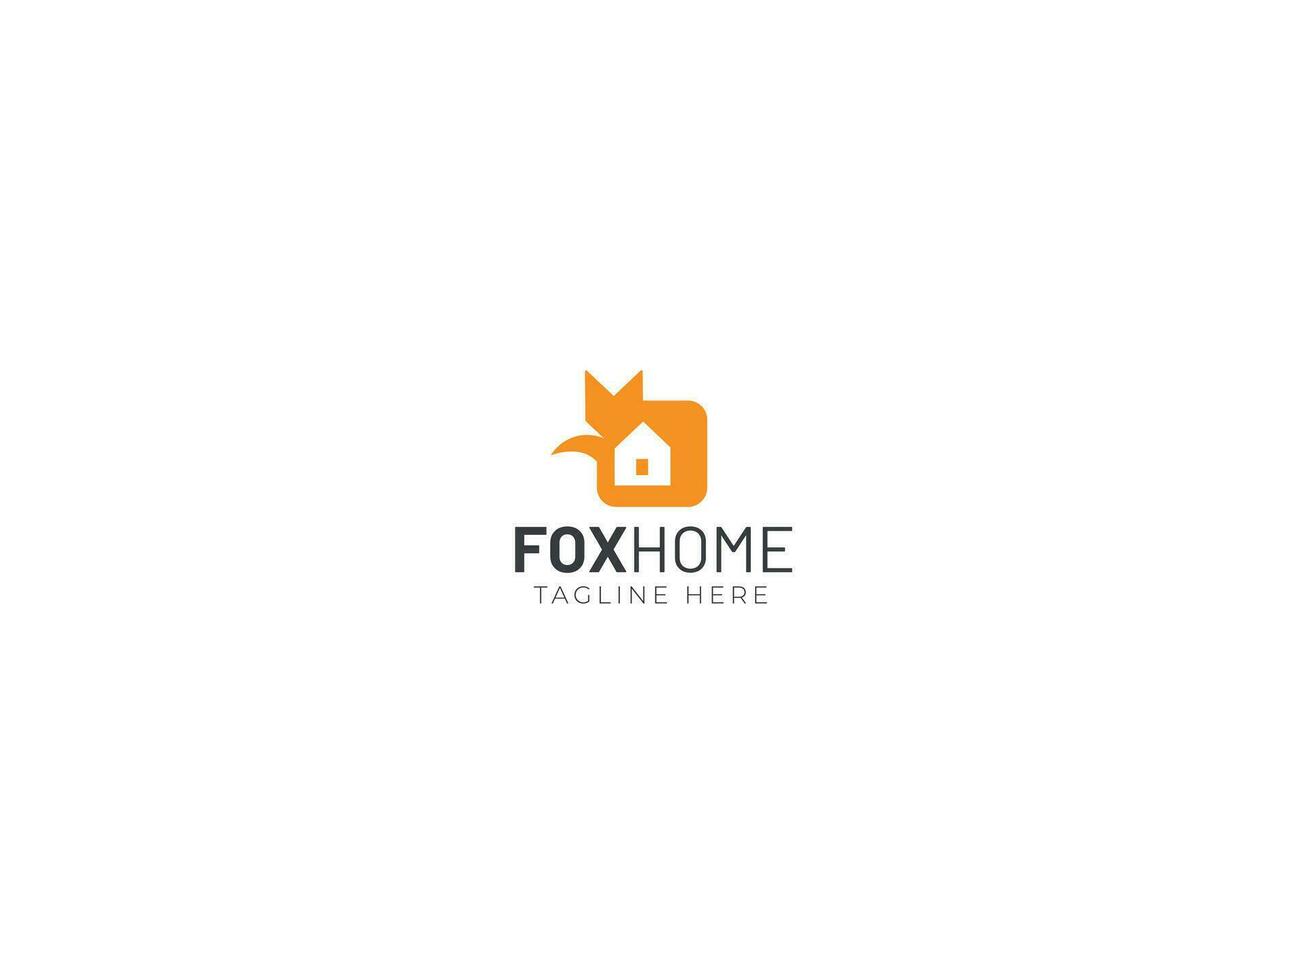 Fox home logo design vector